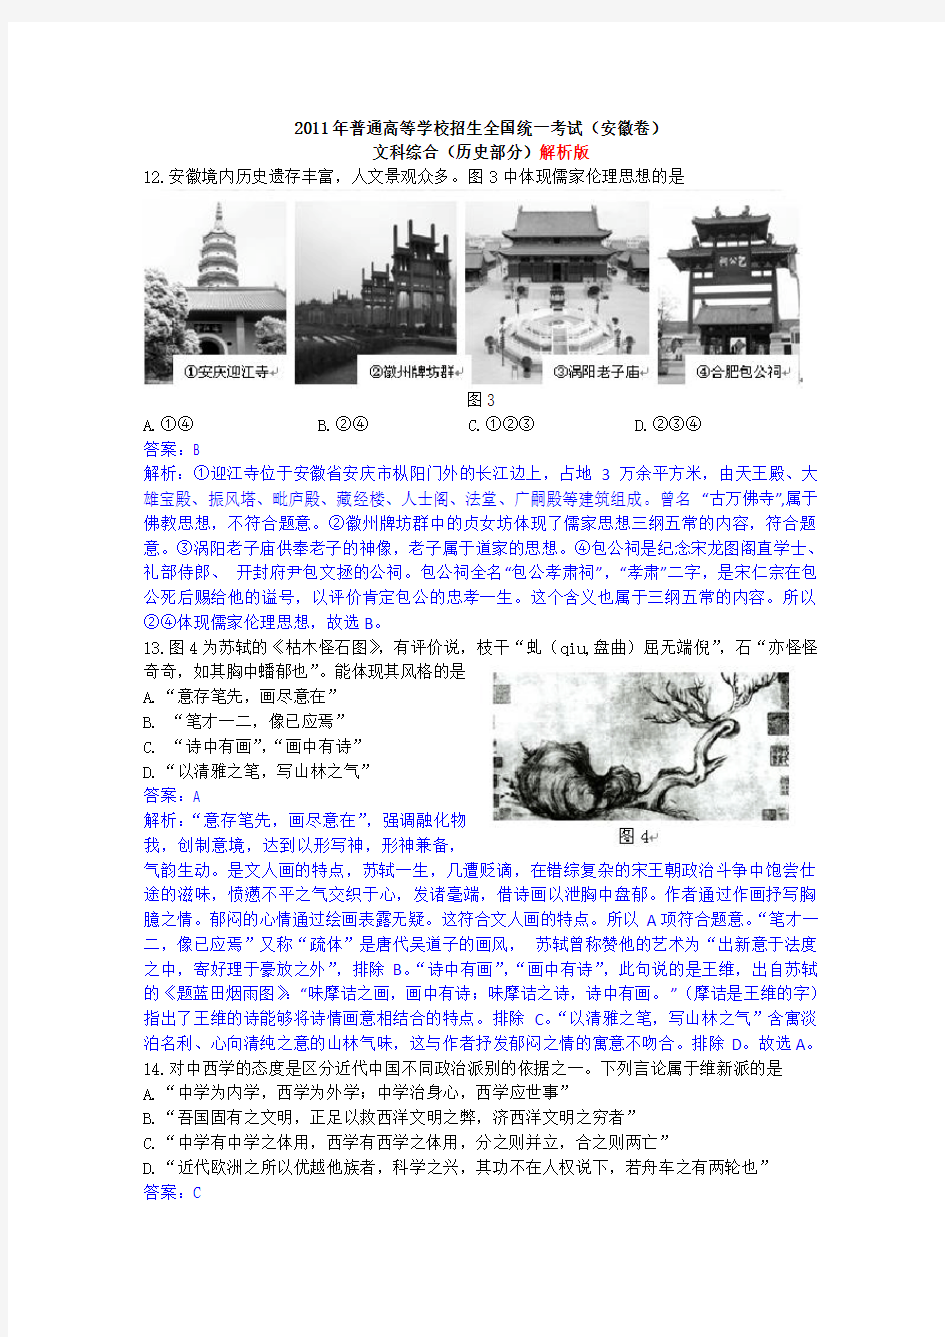 2011年高考试题——文综历史(安徽卷)解析版